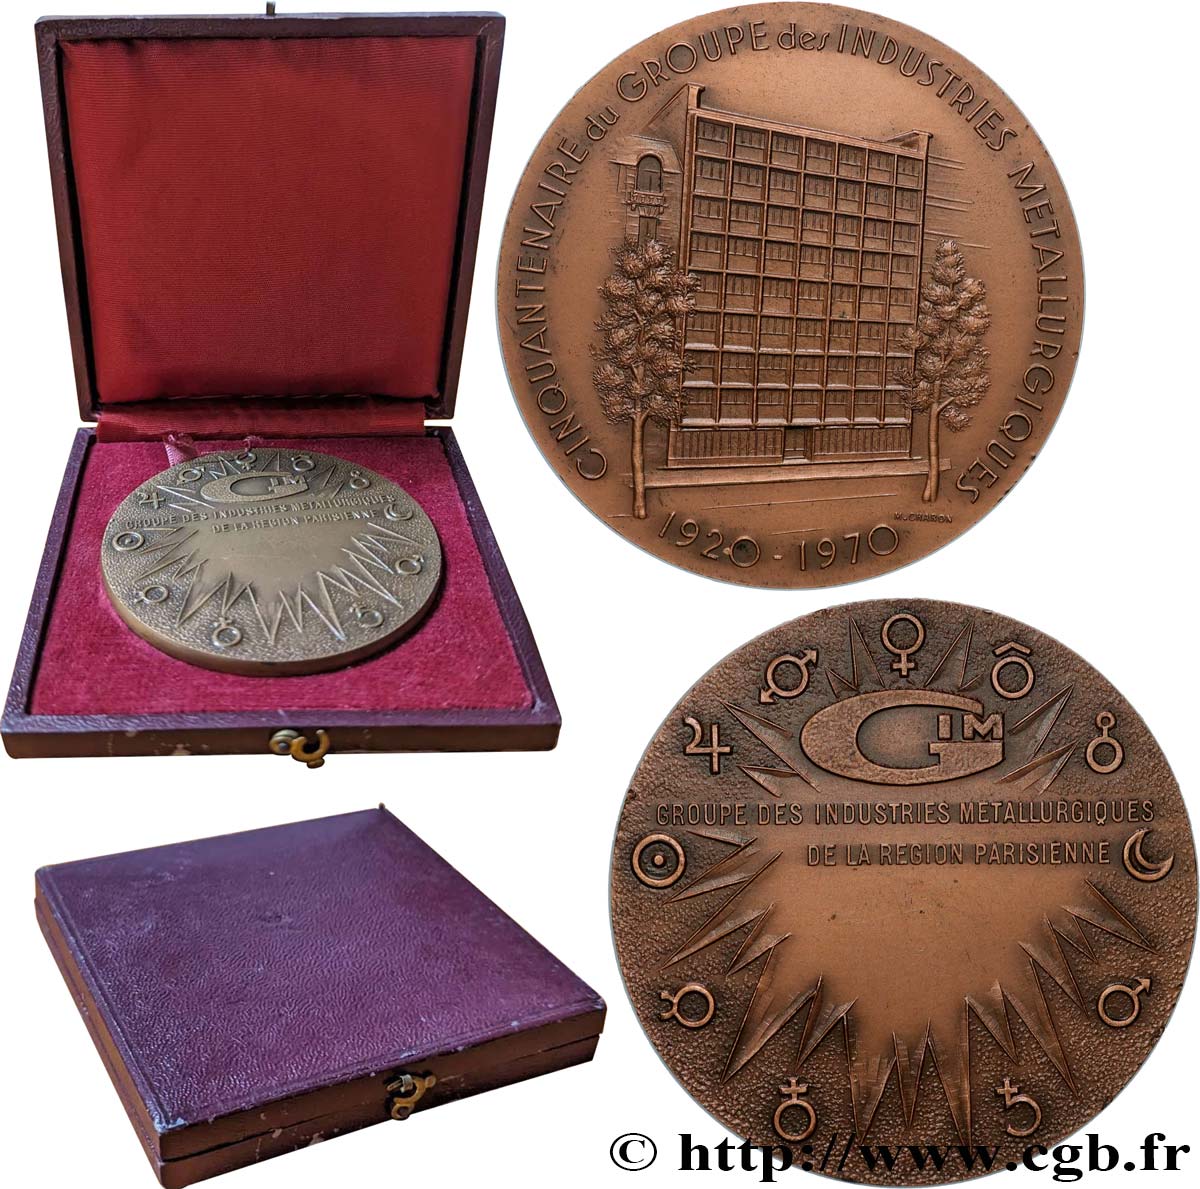 QUINTA REPUBLICA FRANCESA Médaille, Cinquantenaire du groupe des industries métallurgiques EBC